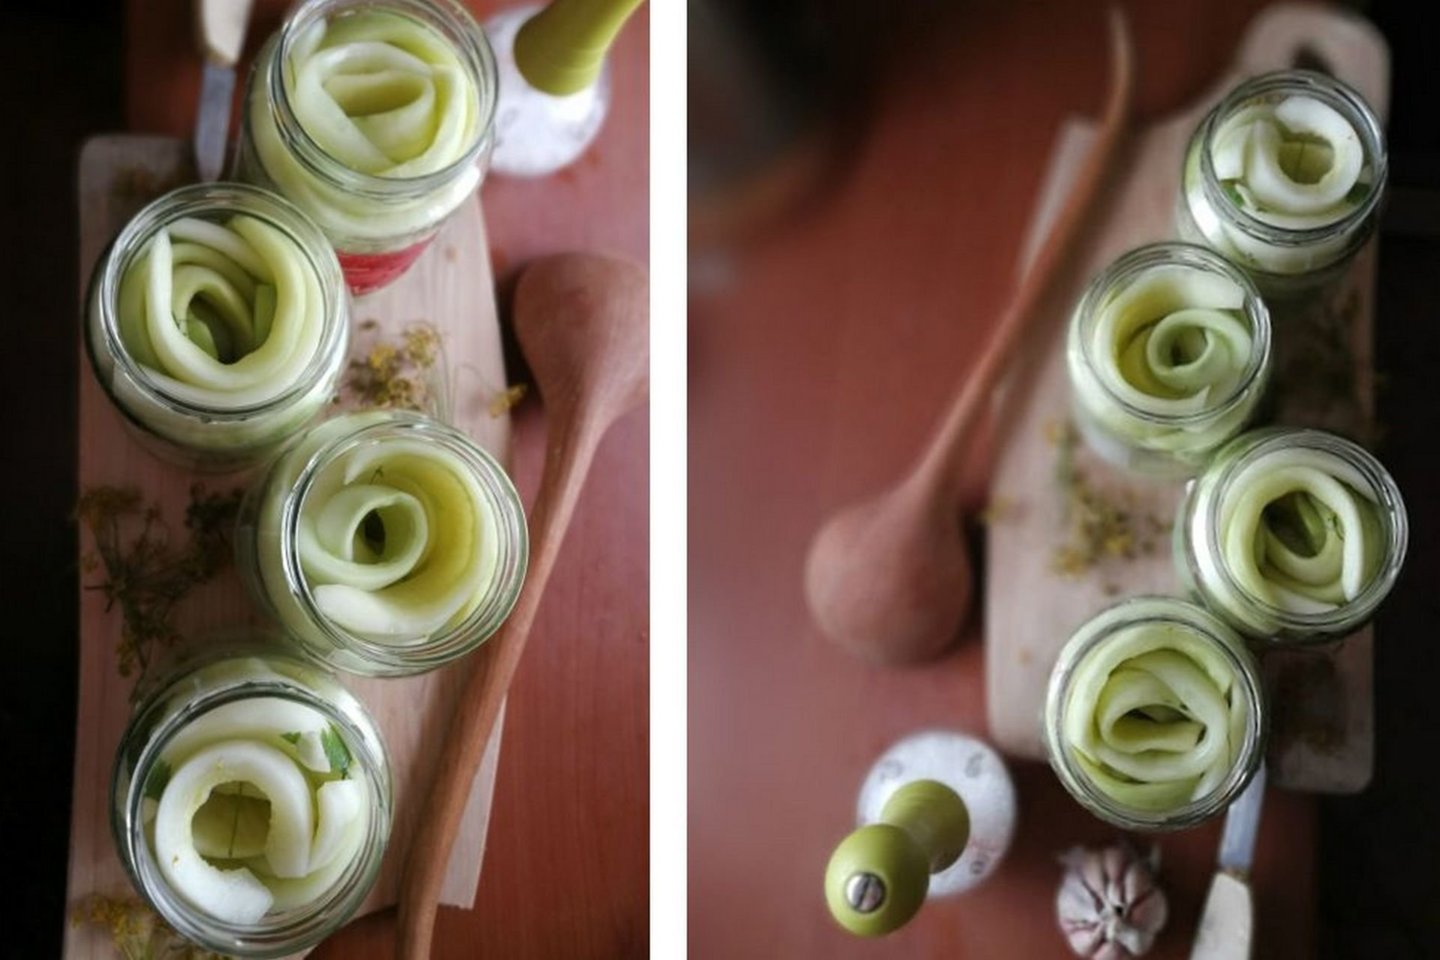 Raugintos agurkų juostos arba pjaustyti rauginti agurkai.<br> Nuotr. iš „Kūmutės virtuvė“.